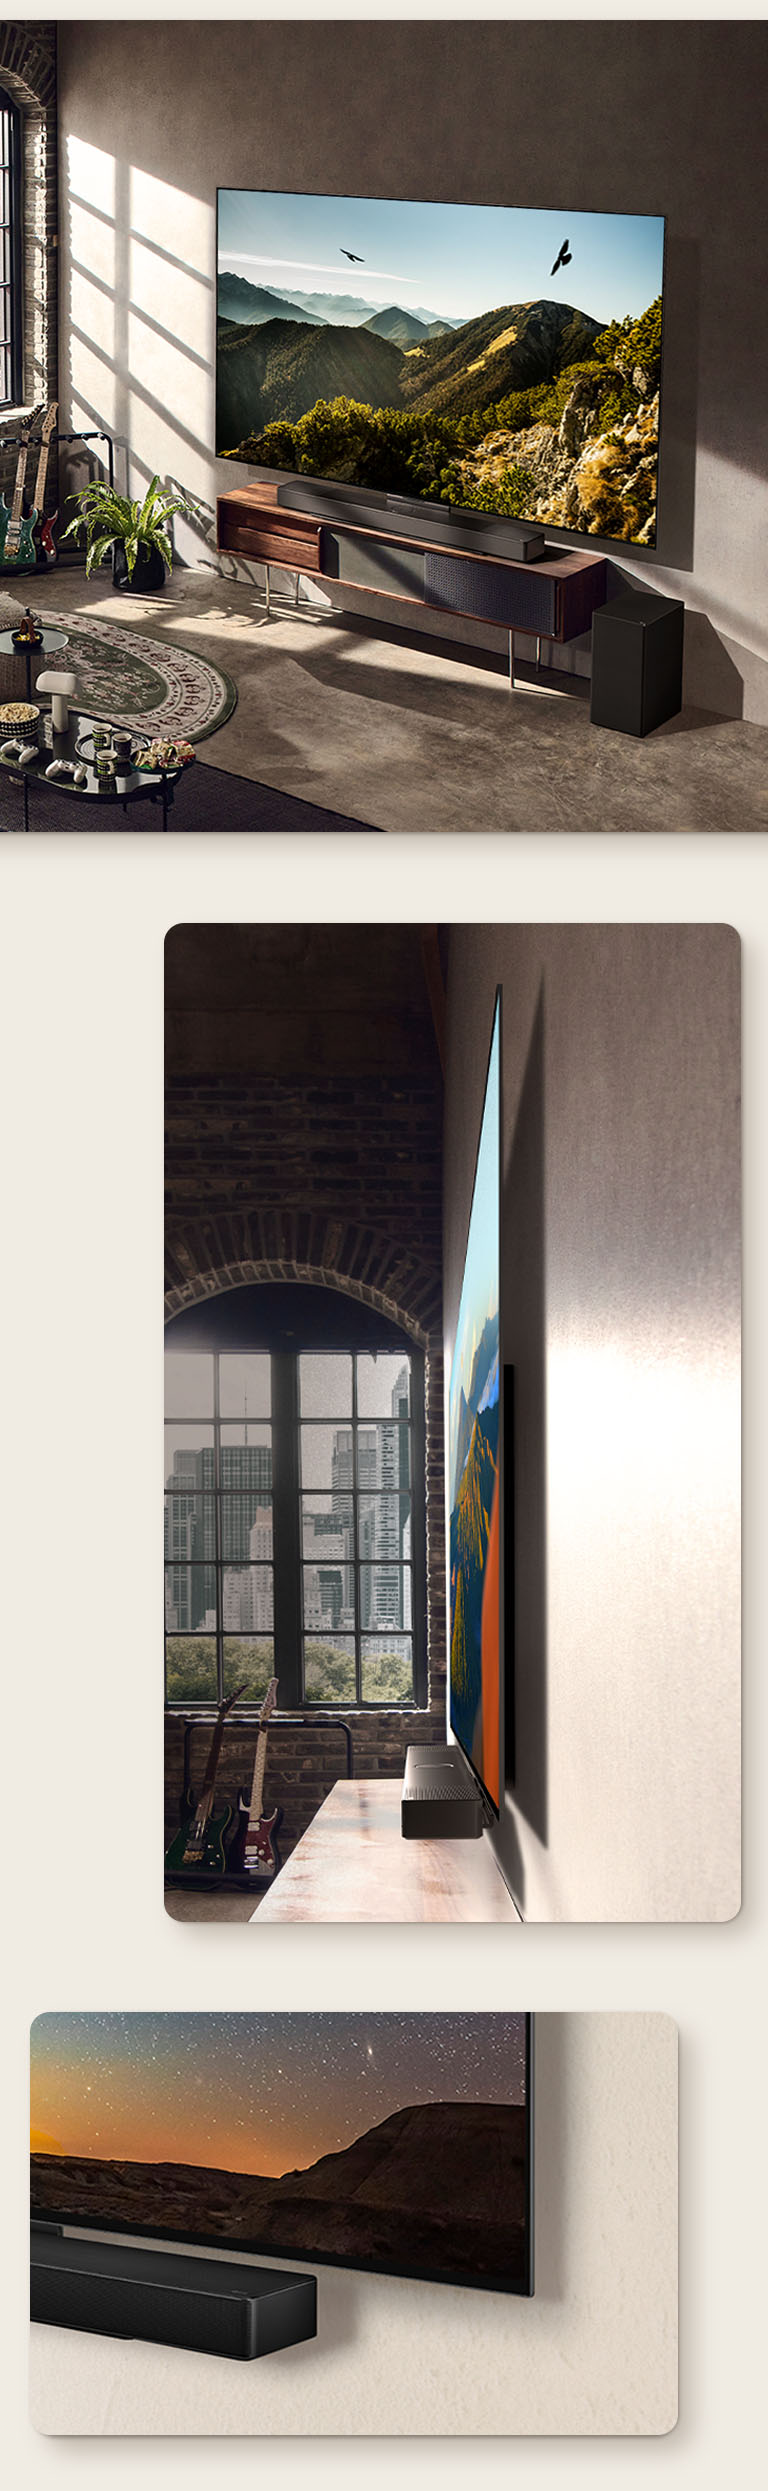 Un'immagine di LG OLED C3 con una Soundbar sulla parete in una stanza artistica. Una vista laterale delle dimensioni ridotte di LG OLED C3 davanti a una finestra con vista su un paesaggio urbano. L'angolo inferiore di LG OLED C3 e della Soundbar.